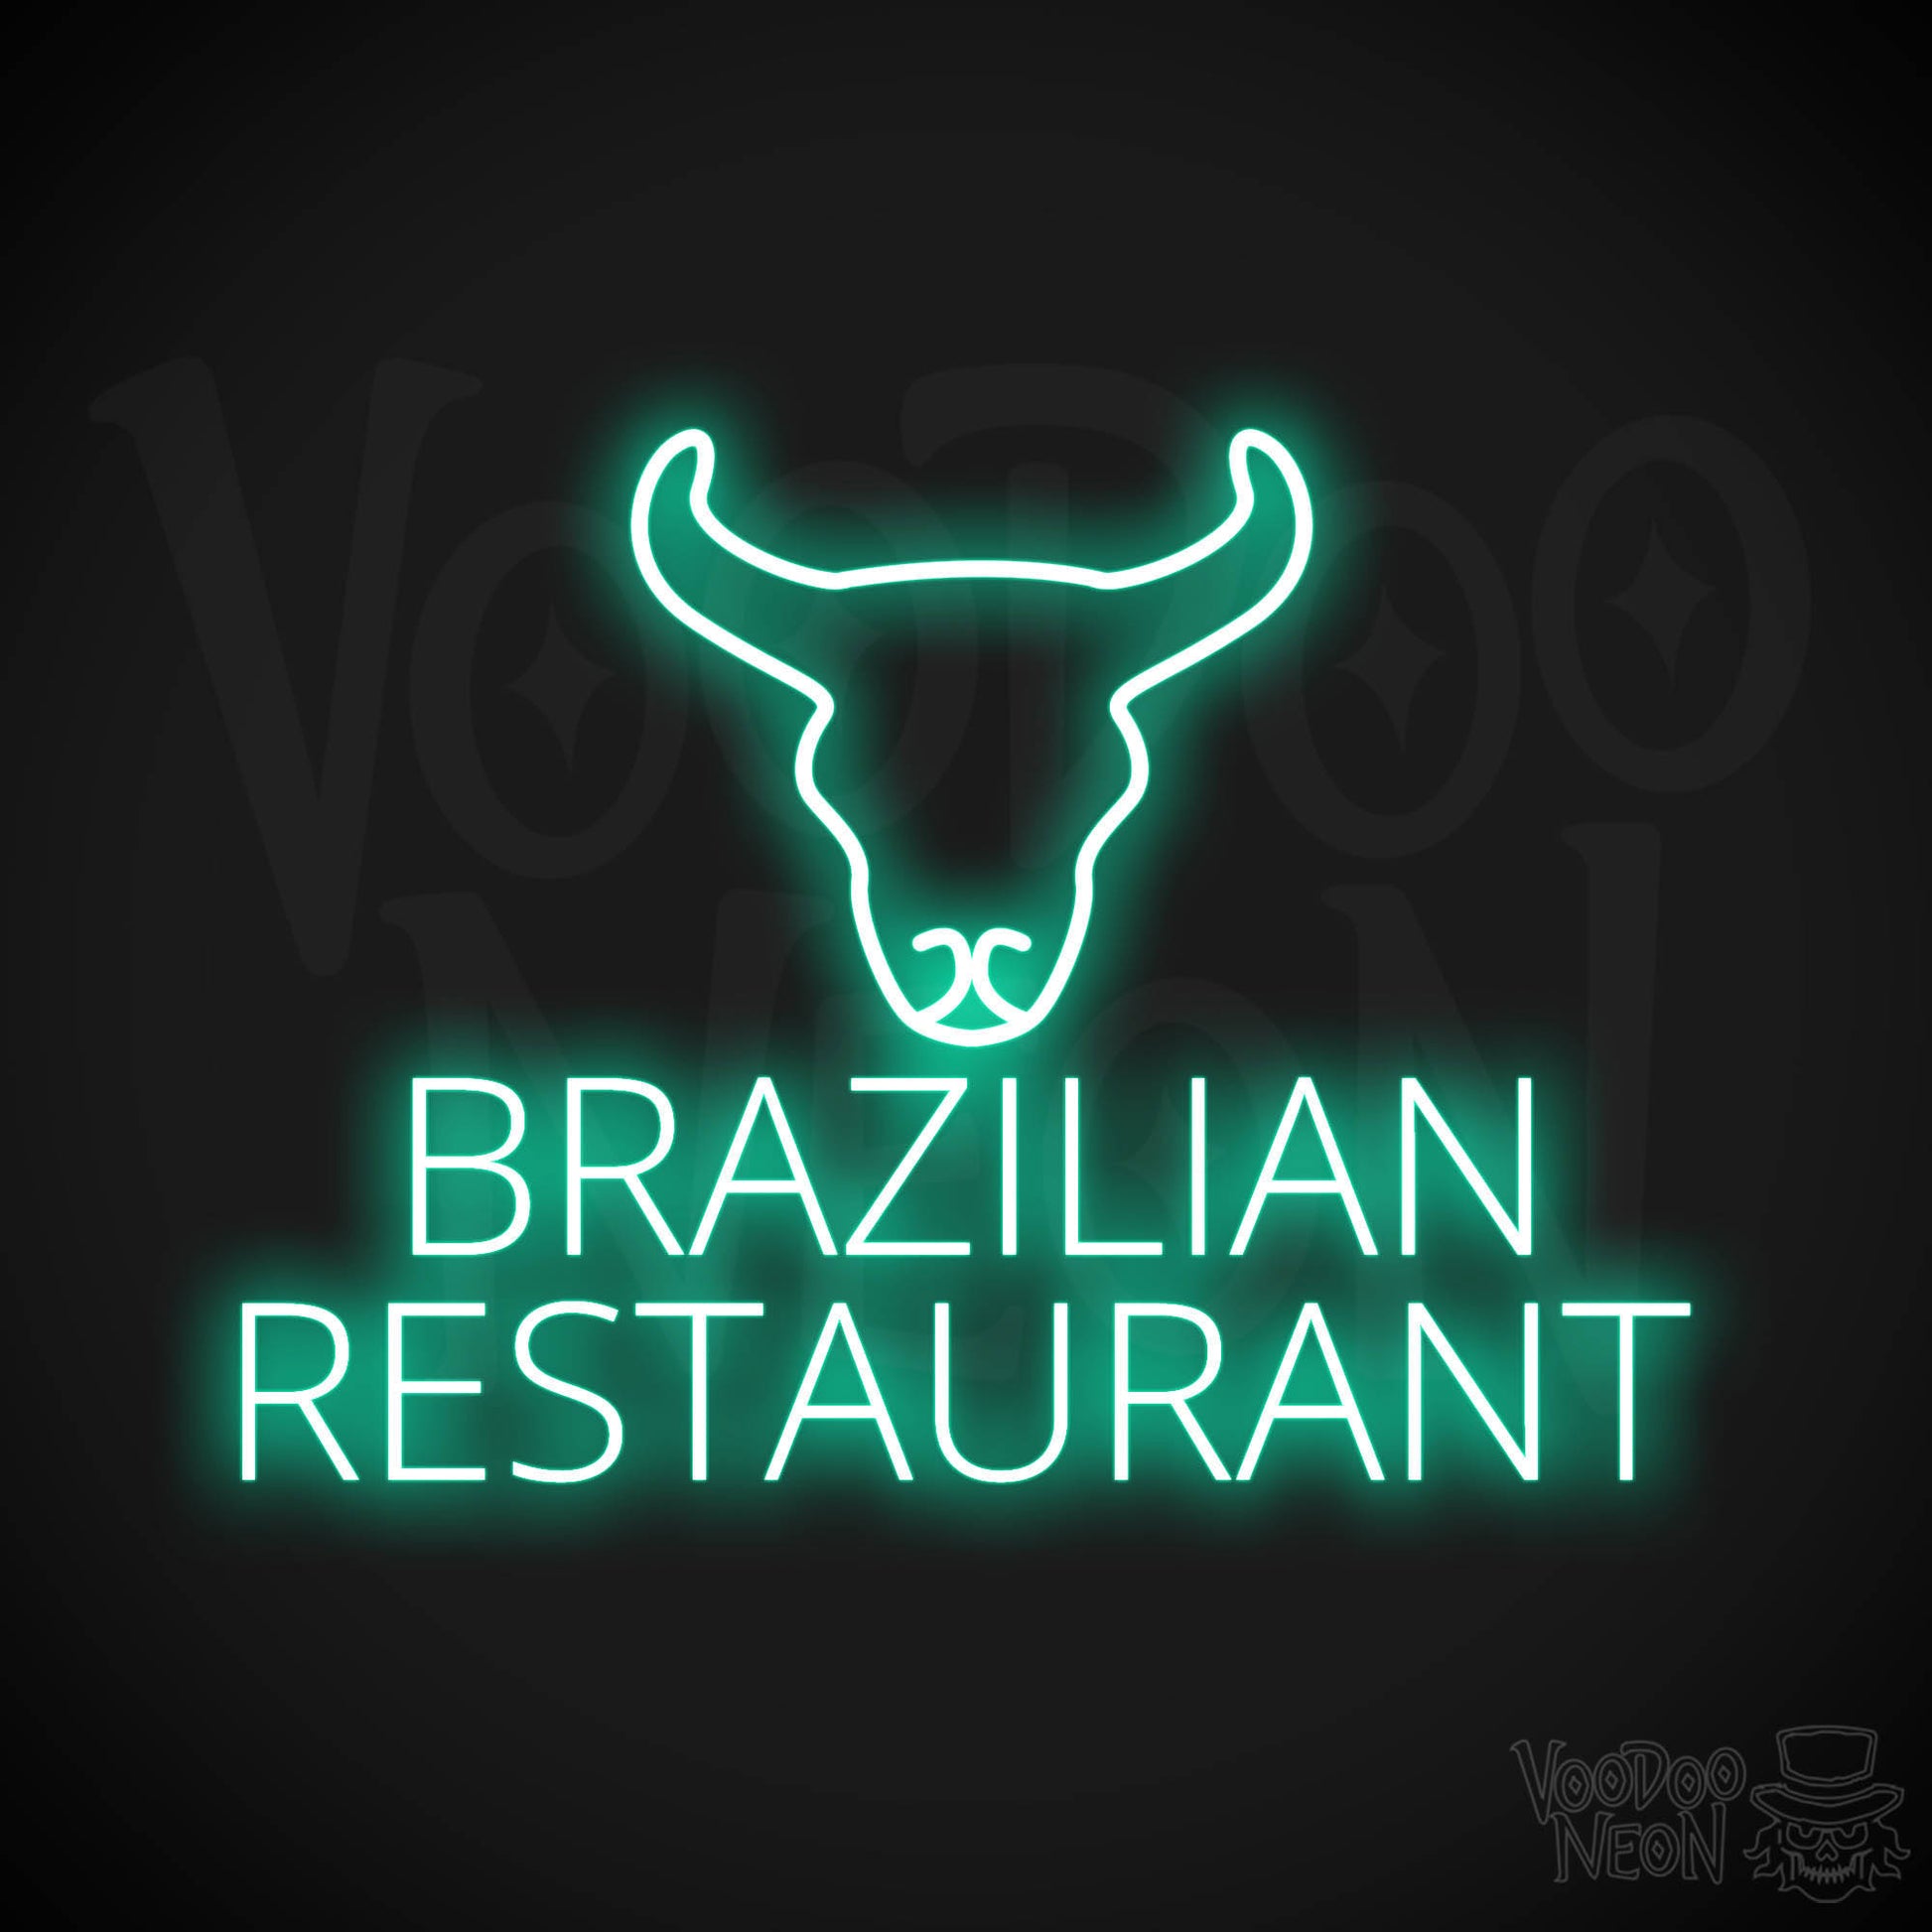 Brazilian Restaurant LED Neon - Light Green